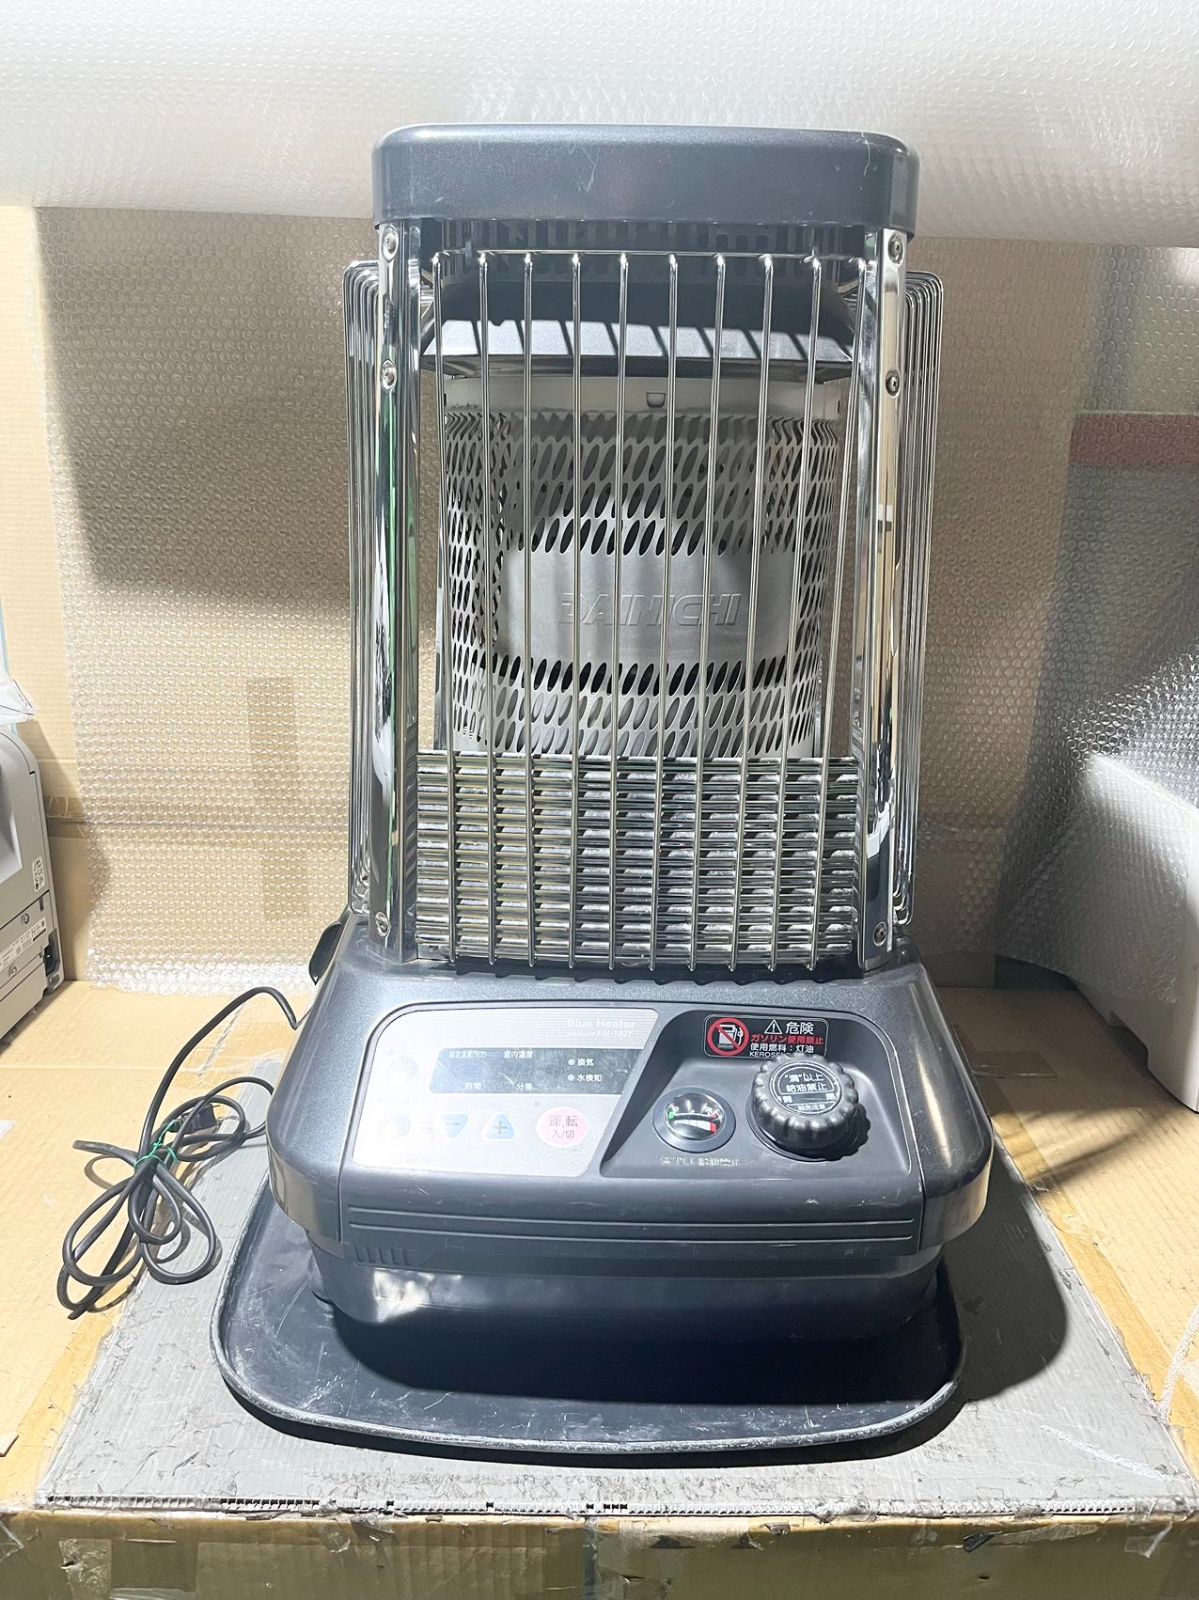 ダイニチ工業 ブルーヒーターFM-714 - 冷暖房、空調